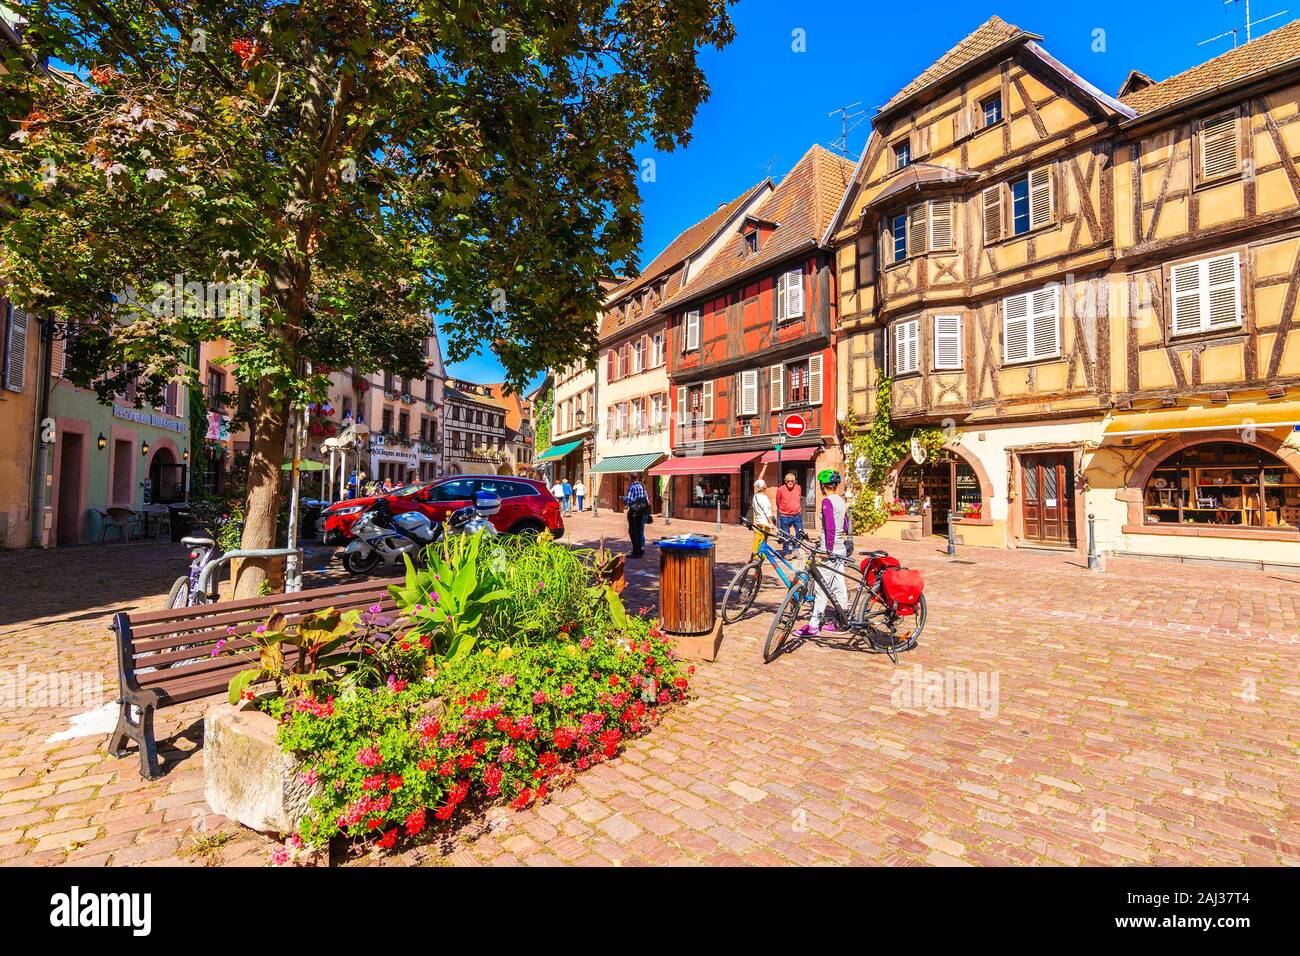 La región vinícola de Alsacia, Francia - Sep 20, 2019: motos de carretera en calles con casas típicas de Kaysersberg pueblo pintoresco que se encuentra en el alsaciano Foto de stock